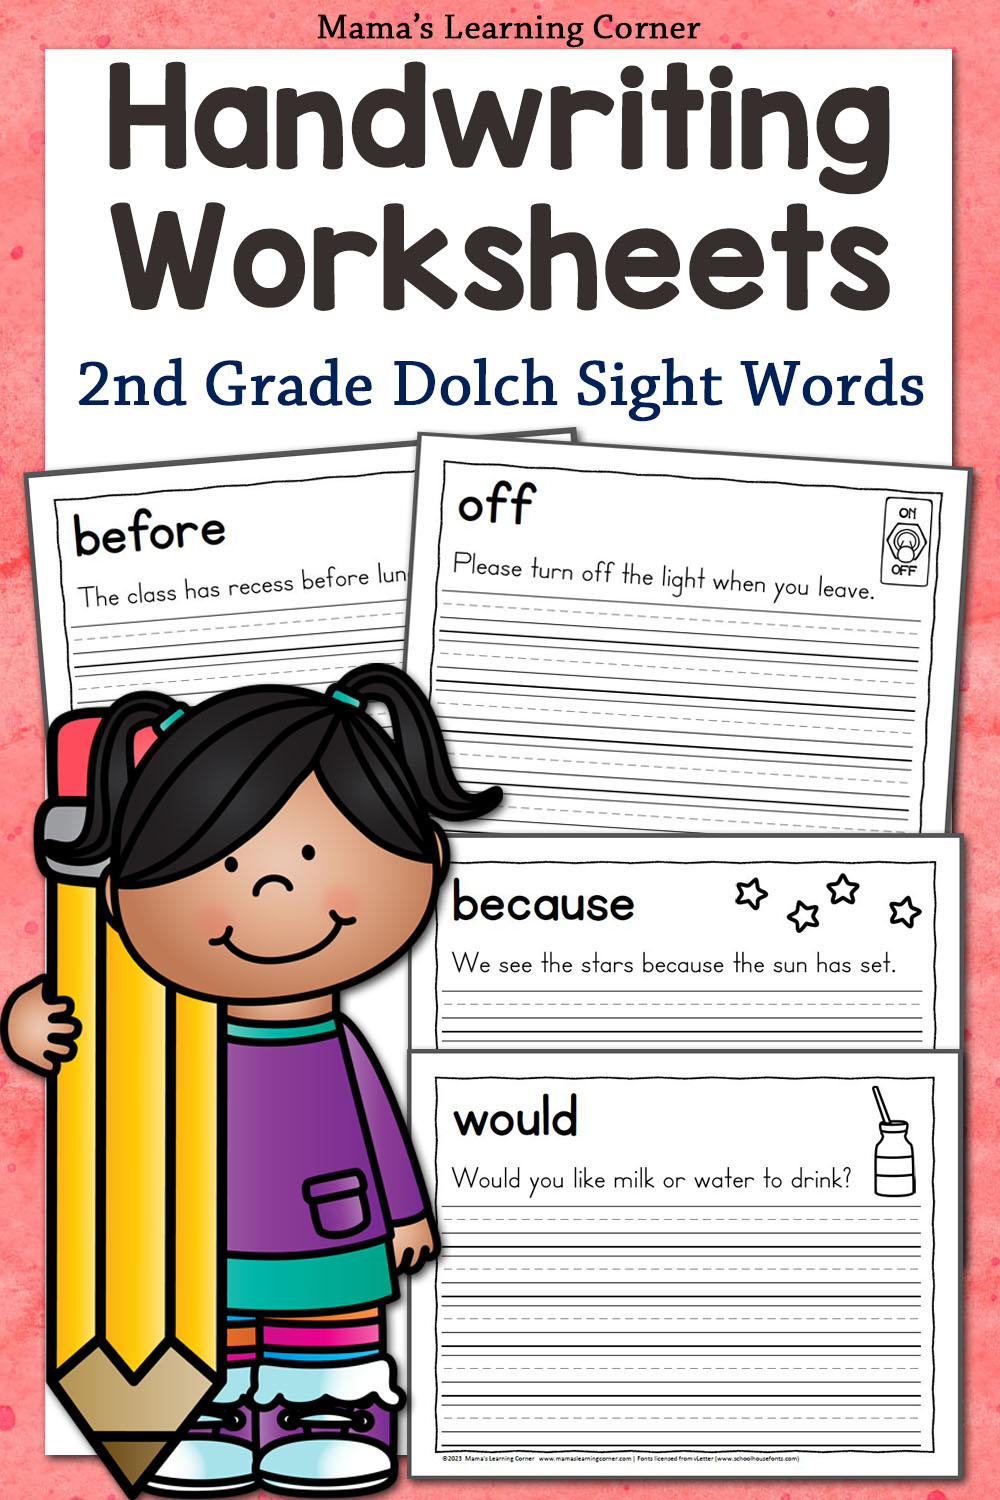 Handwriting Practice Worksheet  Handwriting practice worksheets,  Handwriting worksheets for kids, Handwriting practice